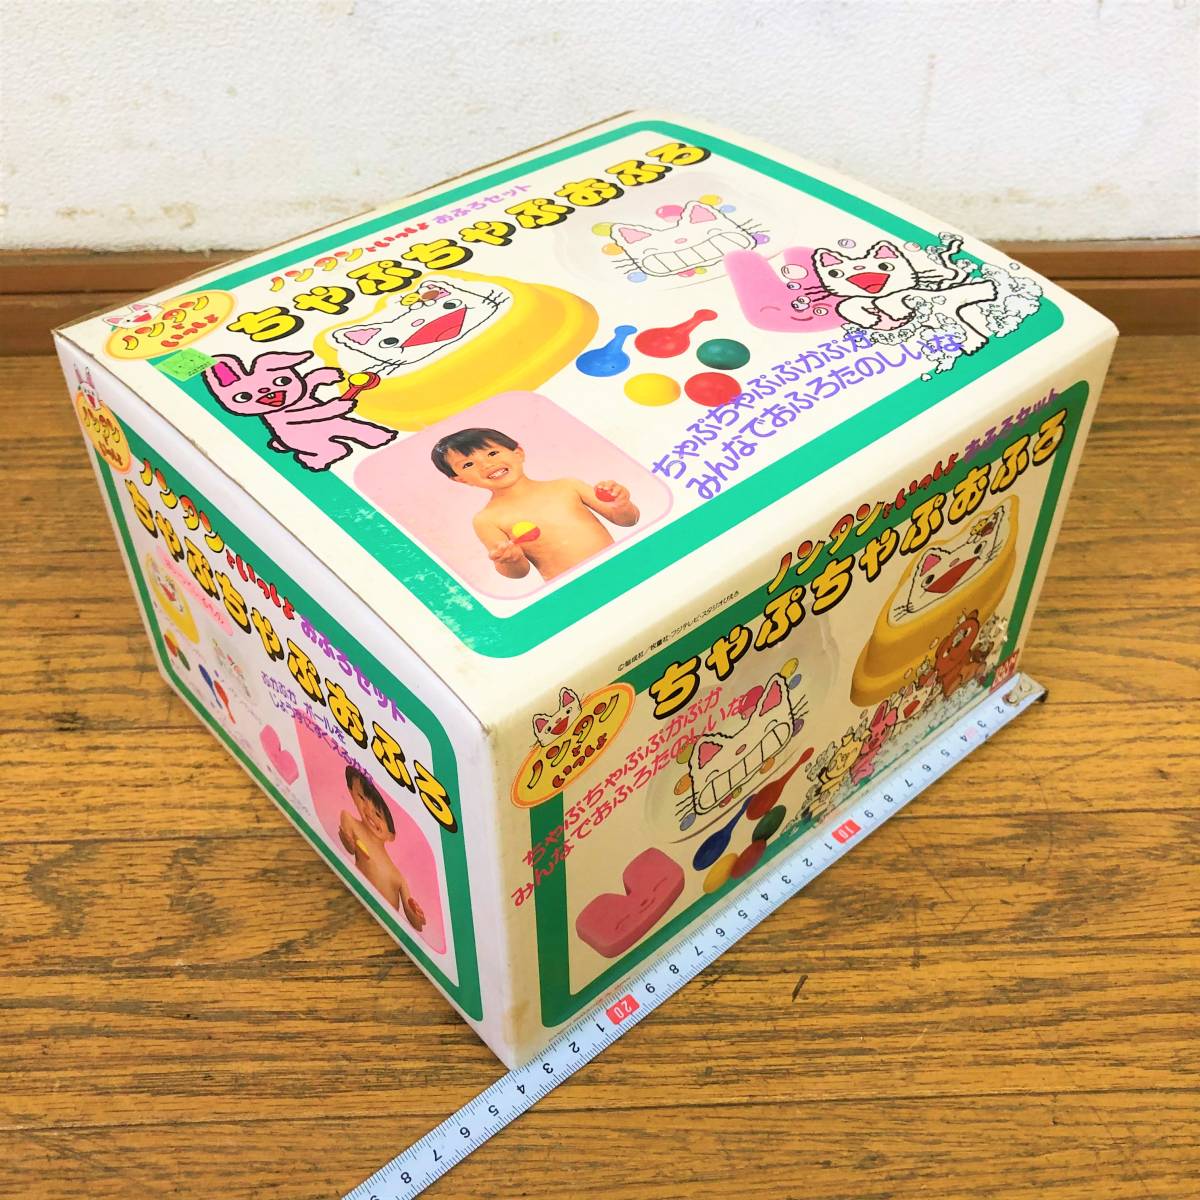  нераспечатанный * хранение товар /BANDAI/ Nontan /...... ванна / ванна комплект / Junk / игрушка / ванна для игрушка / родители ./ интеллектуальное развитие / Showa / retro / подлинная вещь / Bandai 